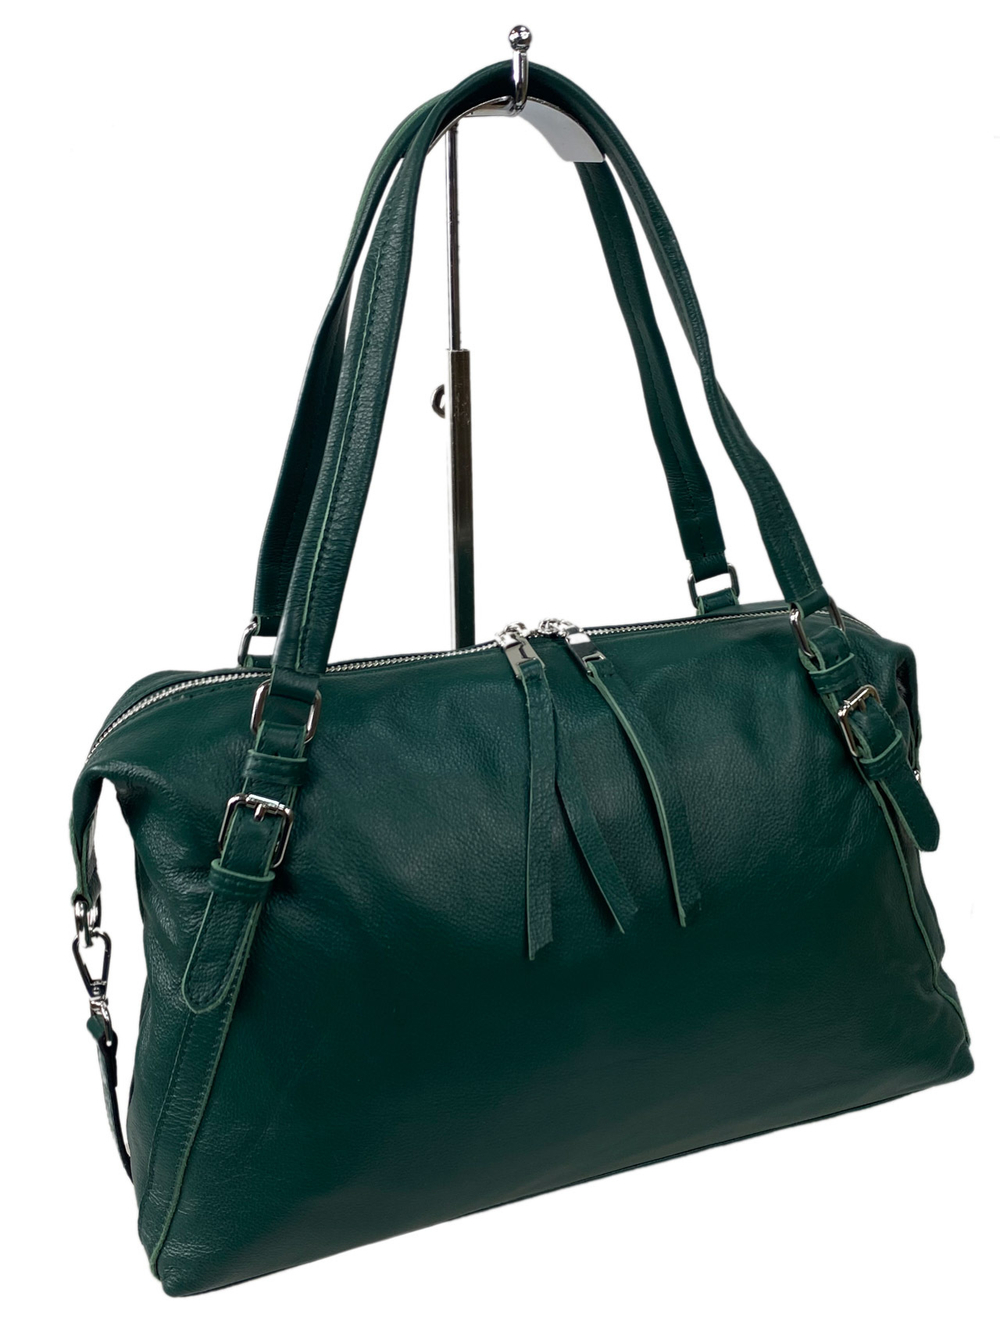 Женская сумка из натуральной кожи, цвет изумрудно-зеленый